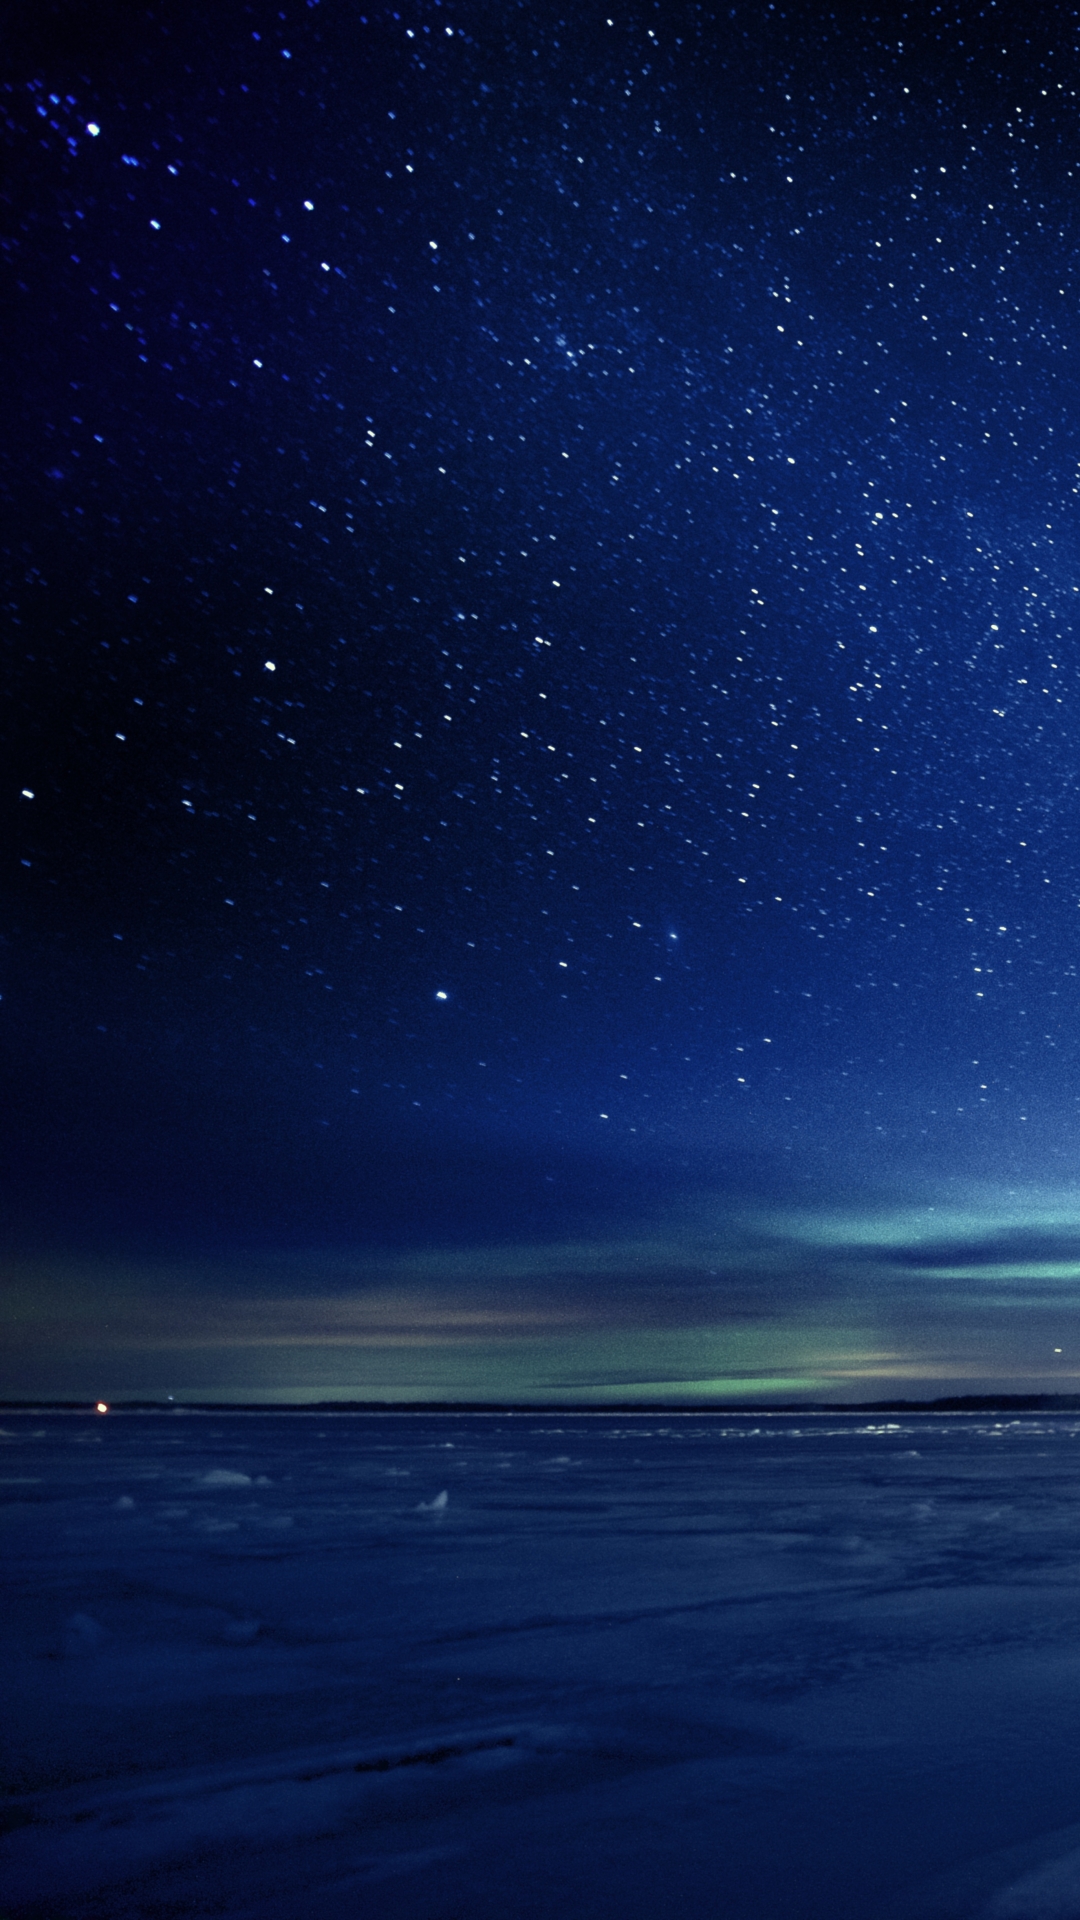 galaxie j3 wallpaper,himmel,horizont,blau,atmosphäre,meer